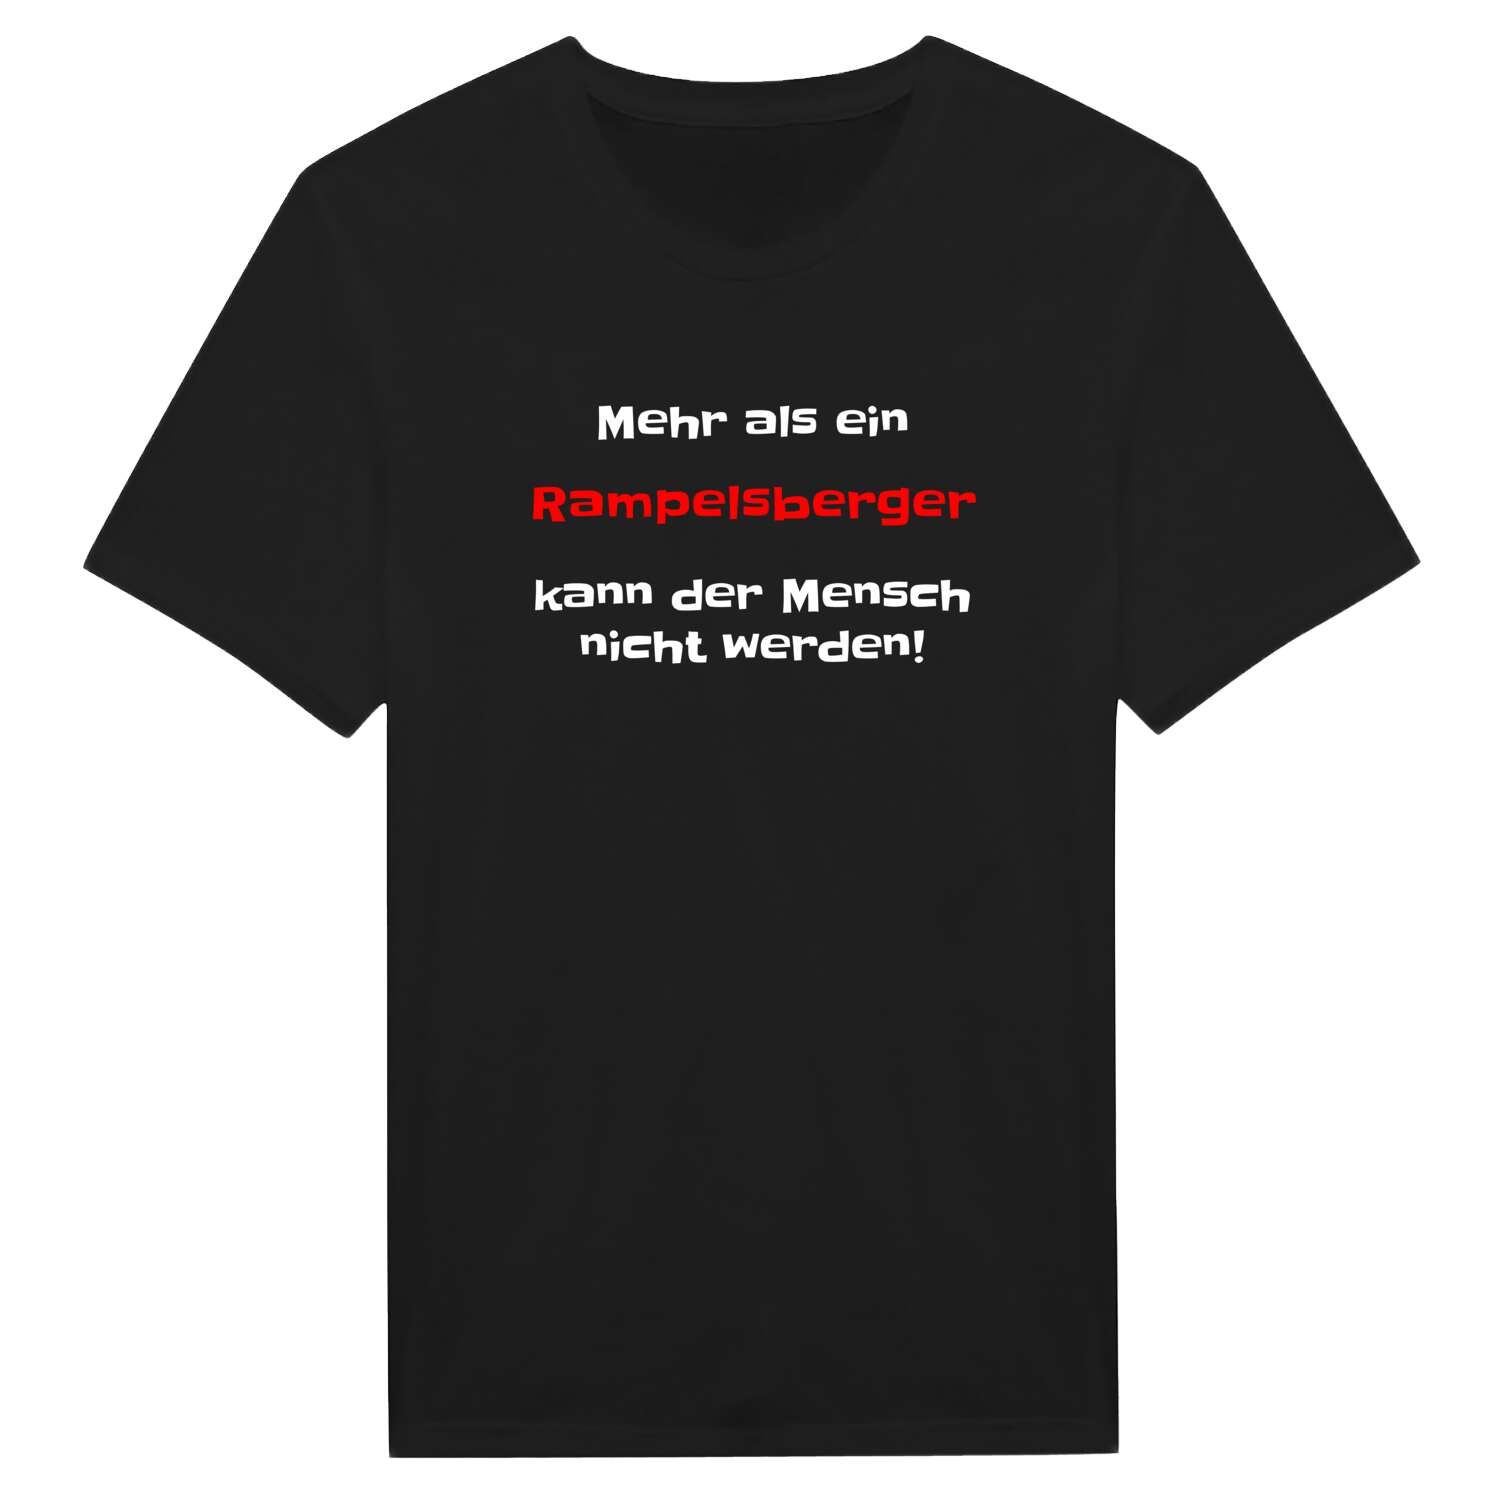 Rampelsberg T-Shirt »Mehr als ein«